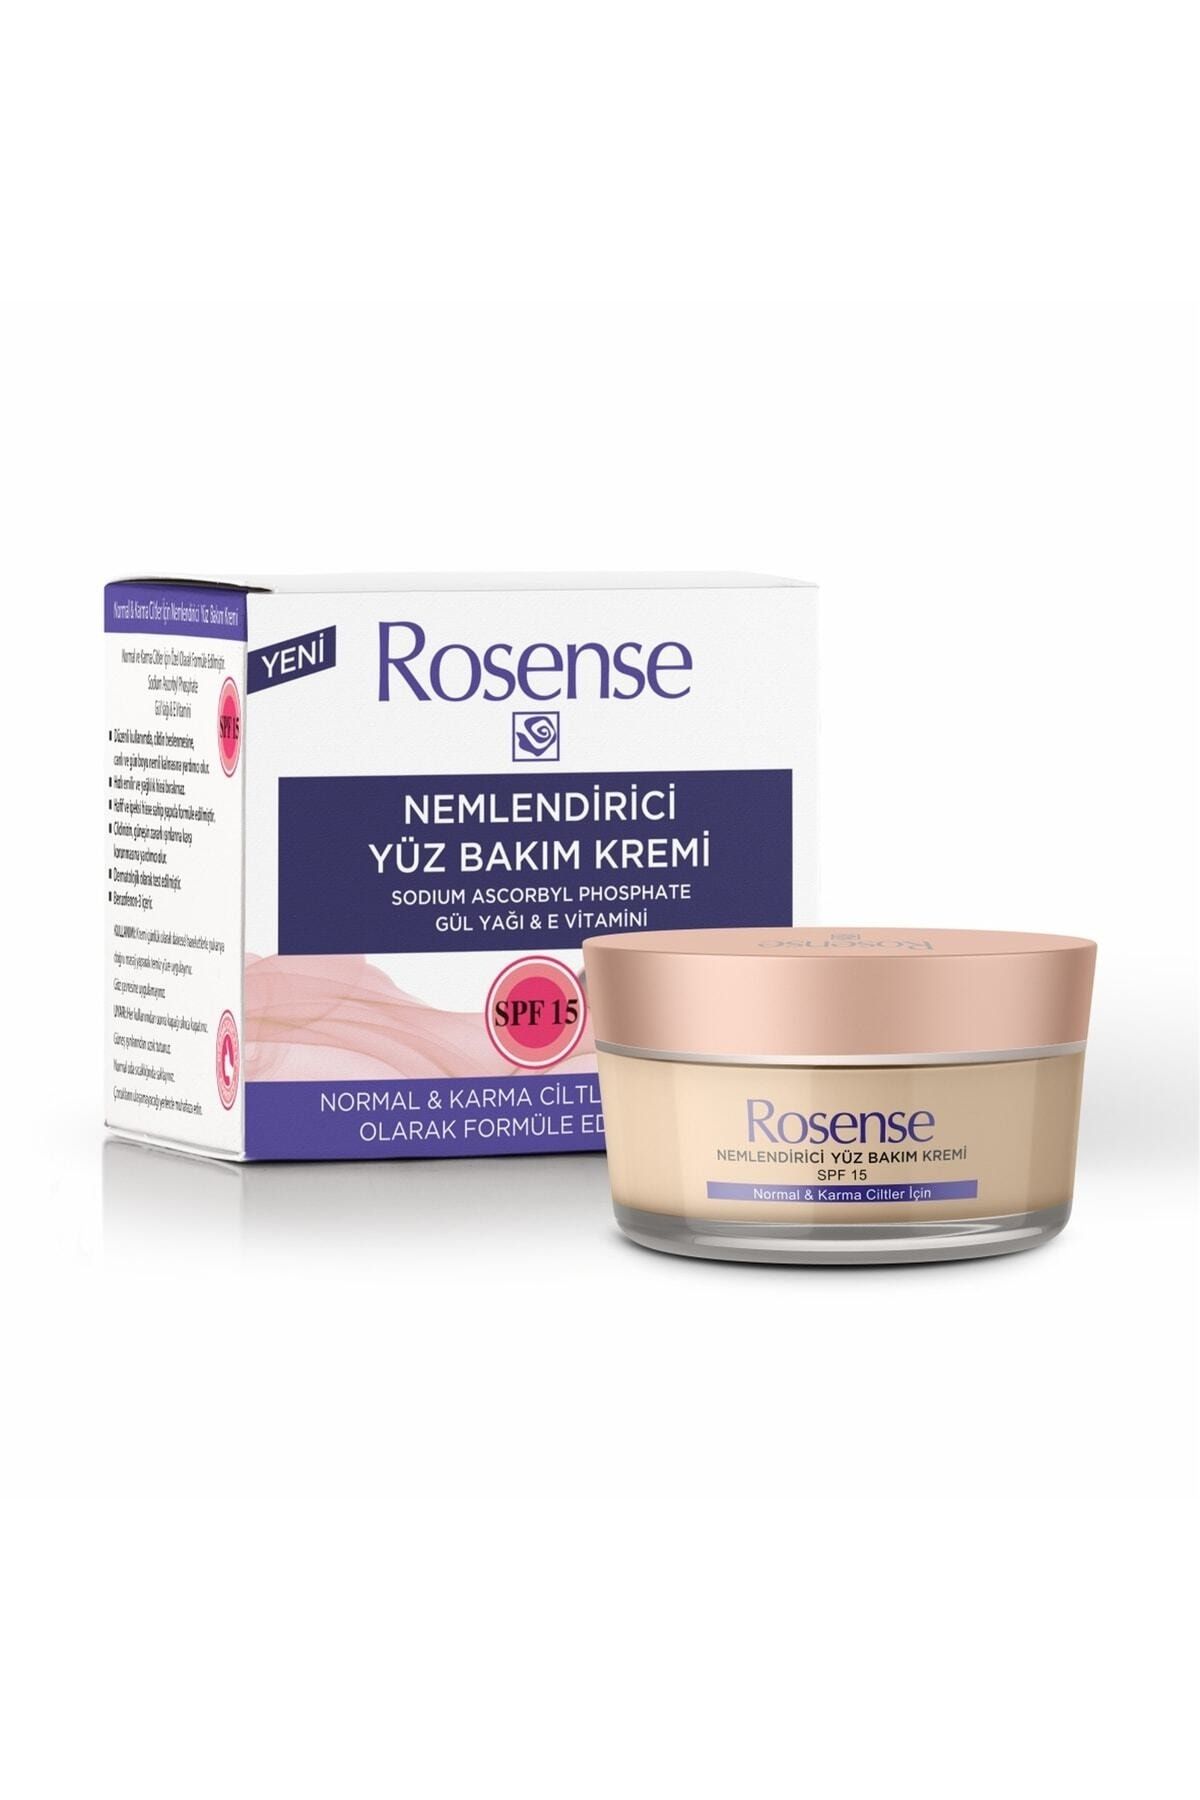 Rosense ® Nemlendirici Yüz Bakım Kremi (NORMAL & KARMA CİLT) - 50 ml